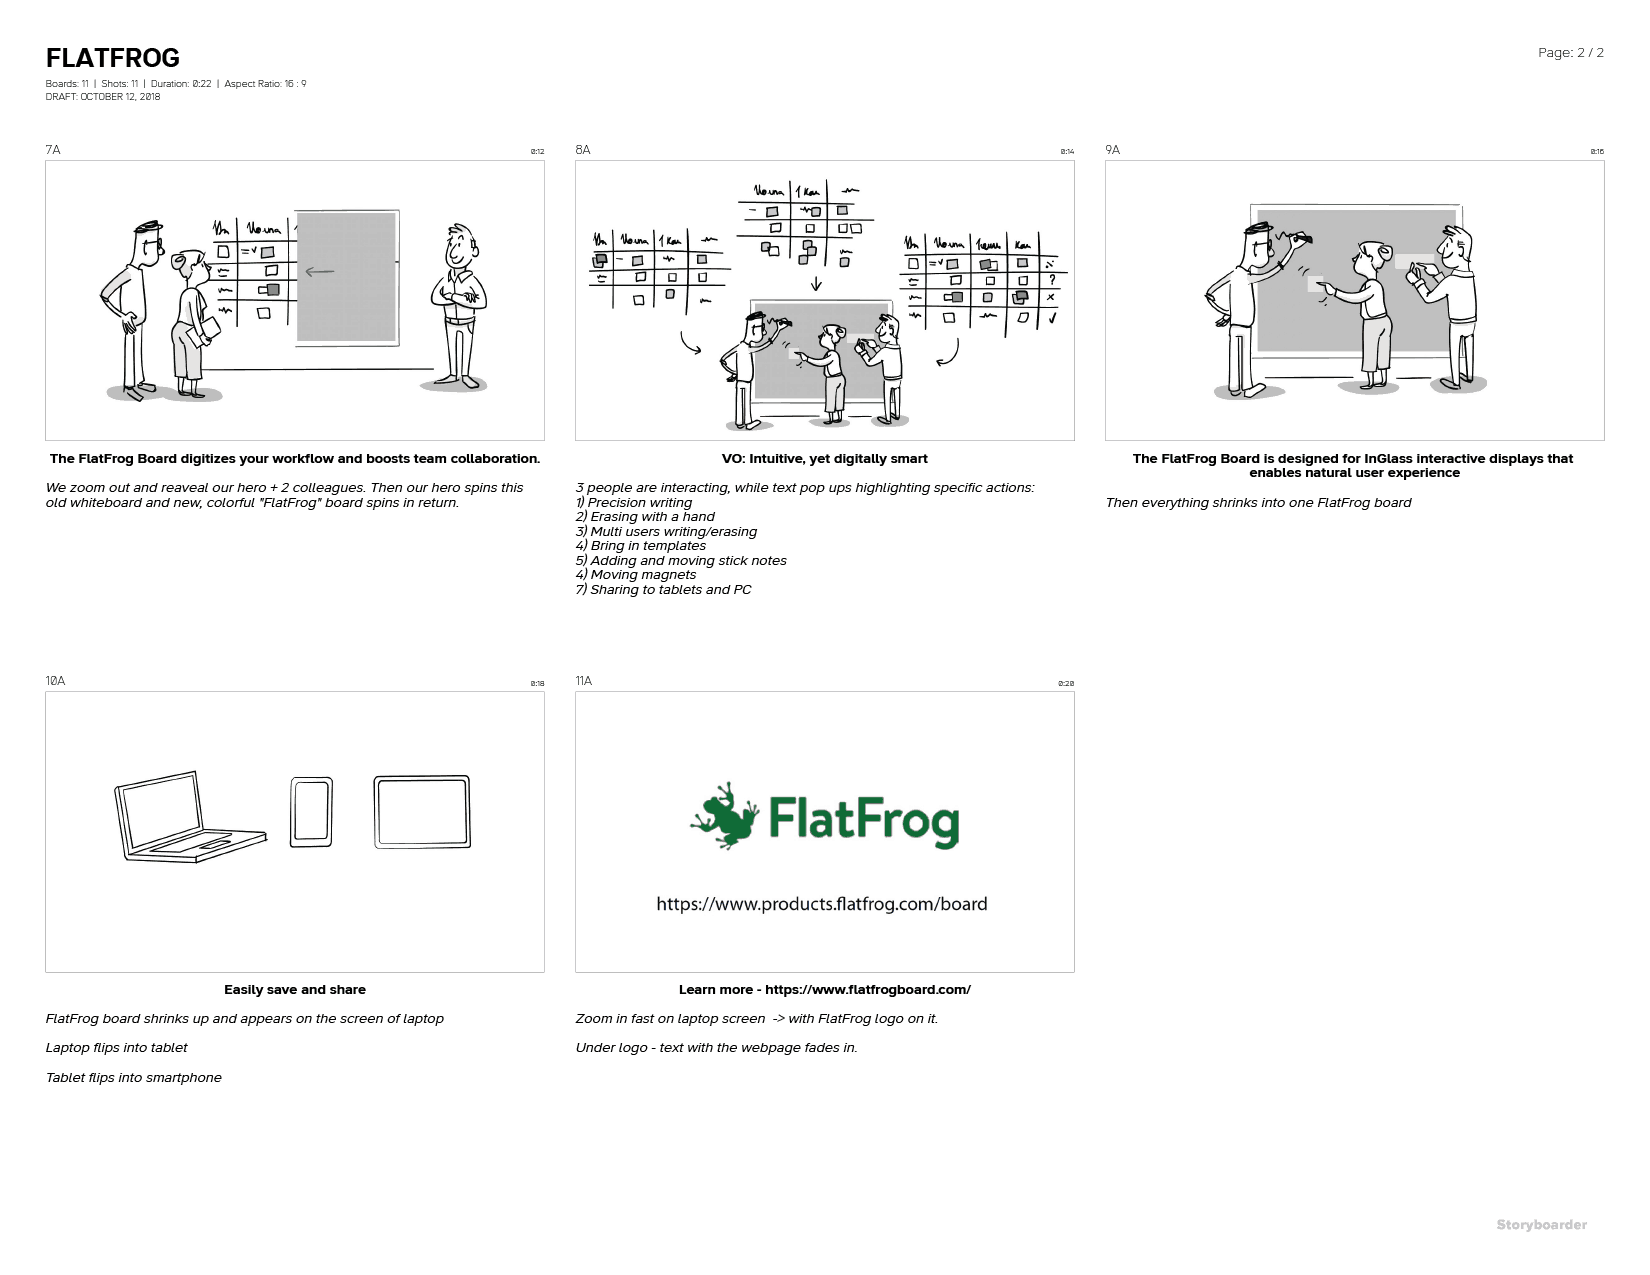 flatfrog storyboard-01-02